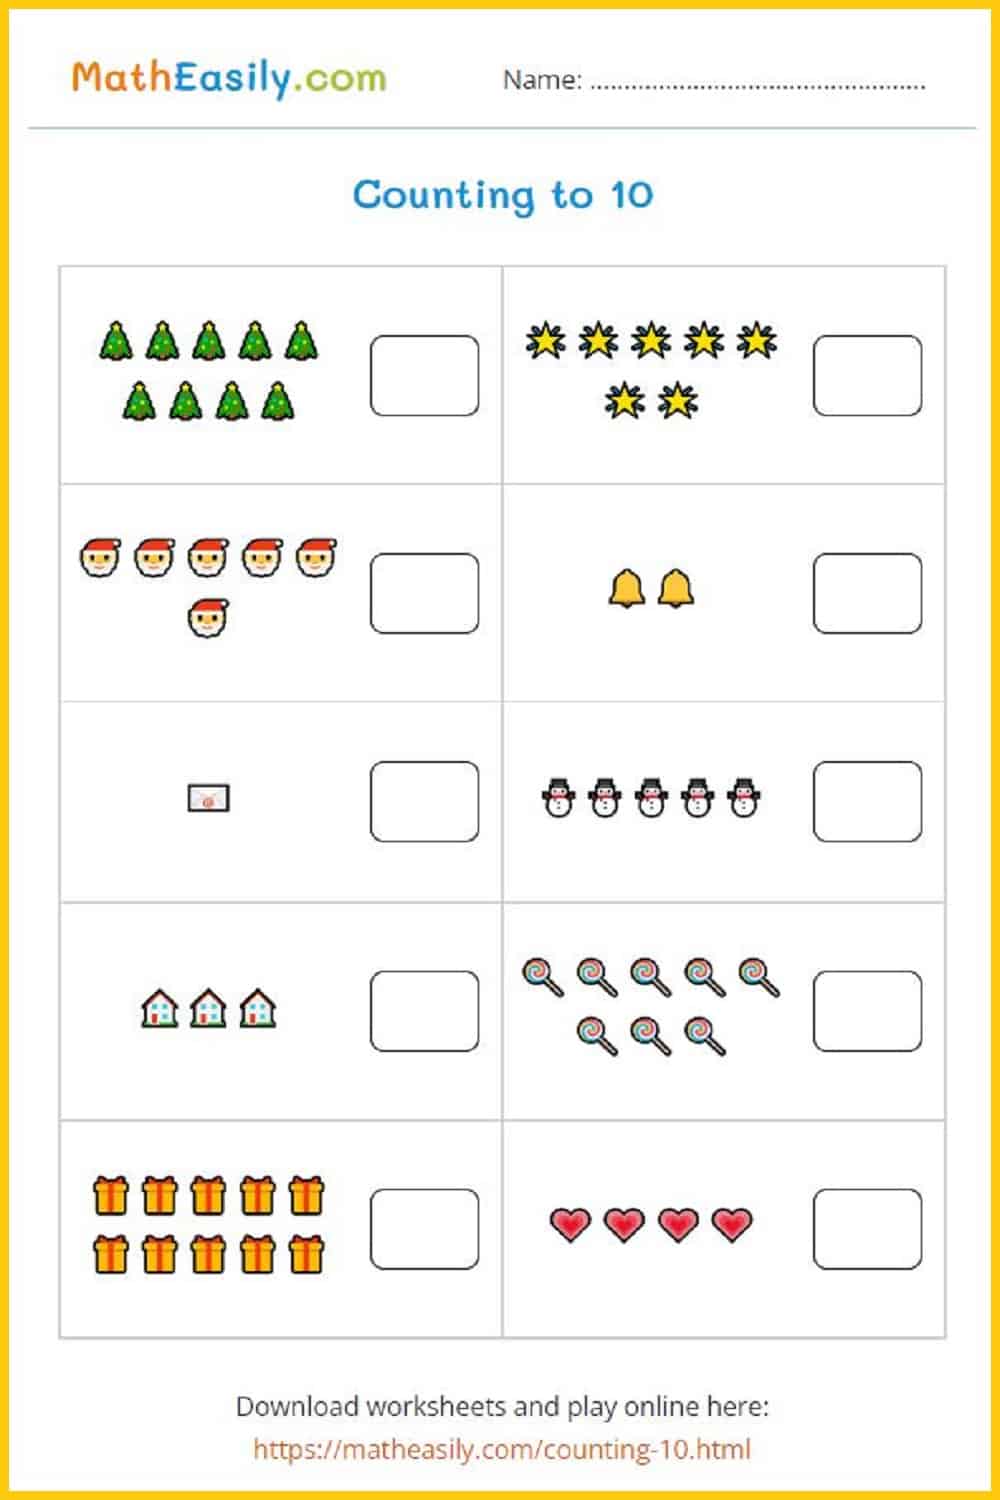 Free Christmas math games printable. Math Christmas games. 
Math games for Christmas. Christmas math activities. Free Christmas games for kids online.